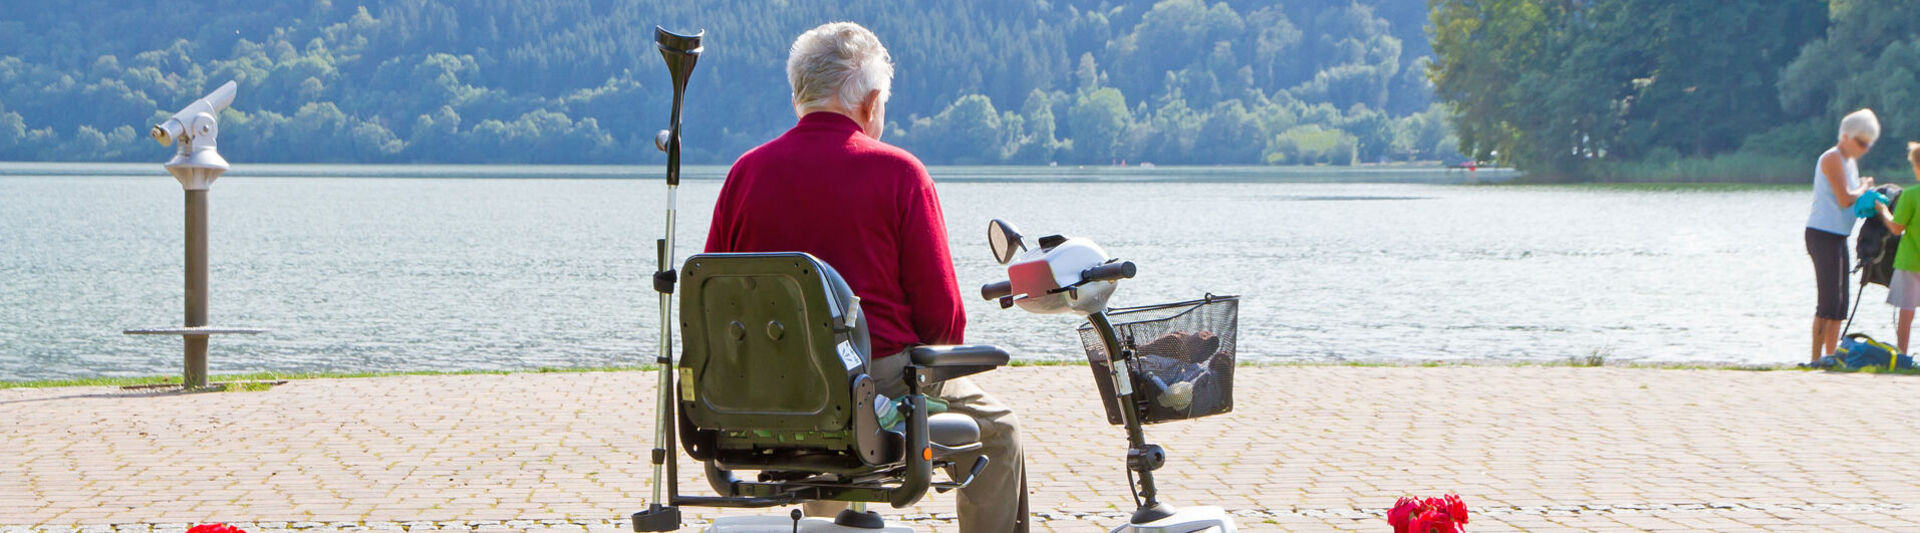 Renter in Rollstuhl schaut im Urlaub auf einen See